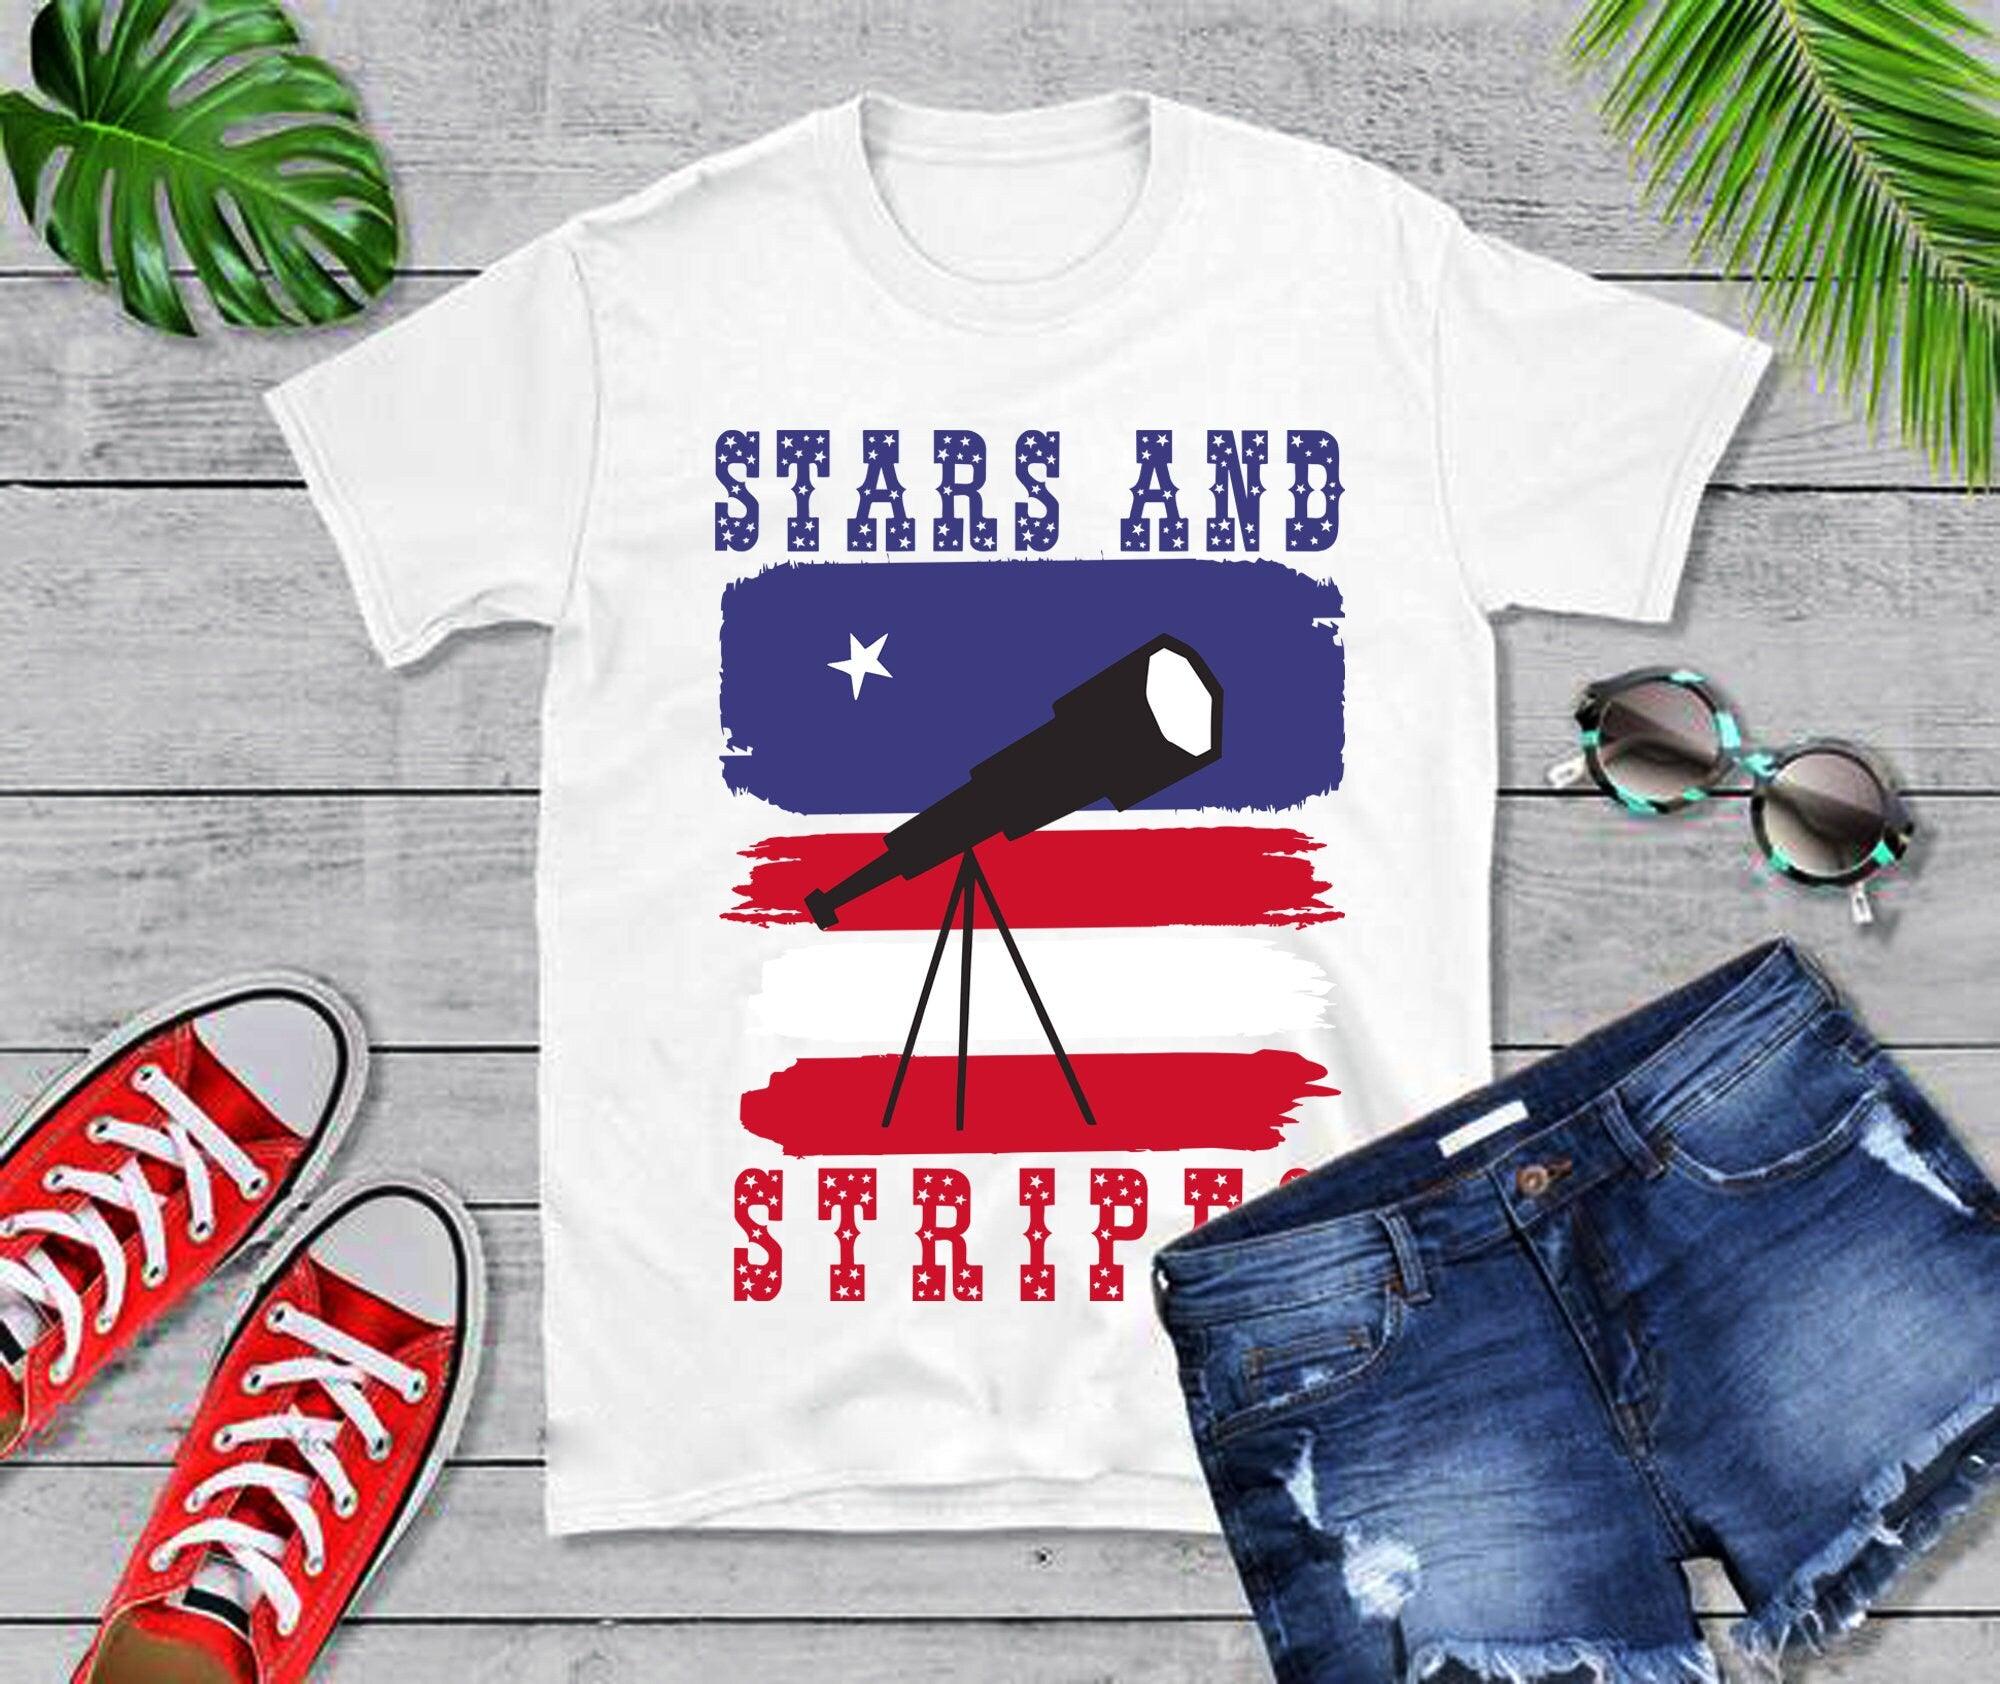 Žvaigždės ir dryžiai | Teleskopas | Amerikos vėliavos marškinėliai, liepos 4-osios šventė – plusminusco.com